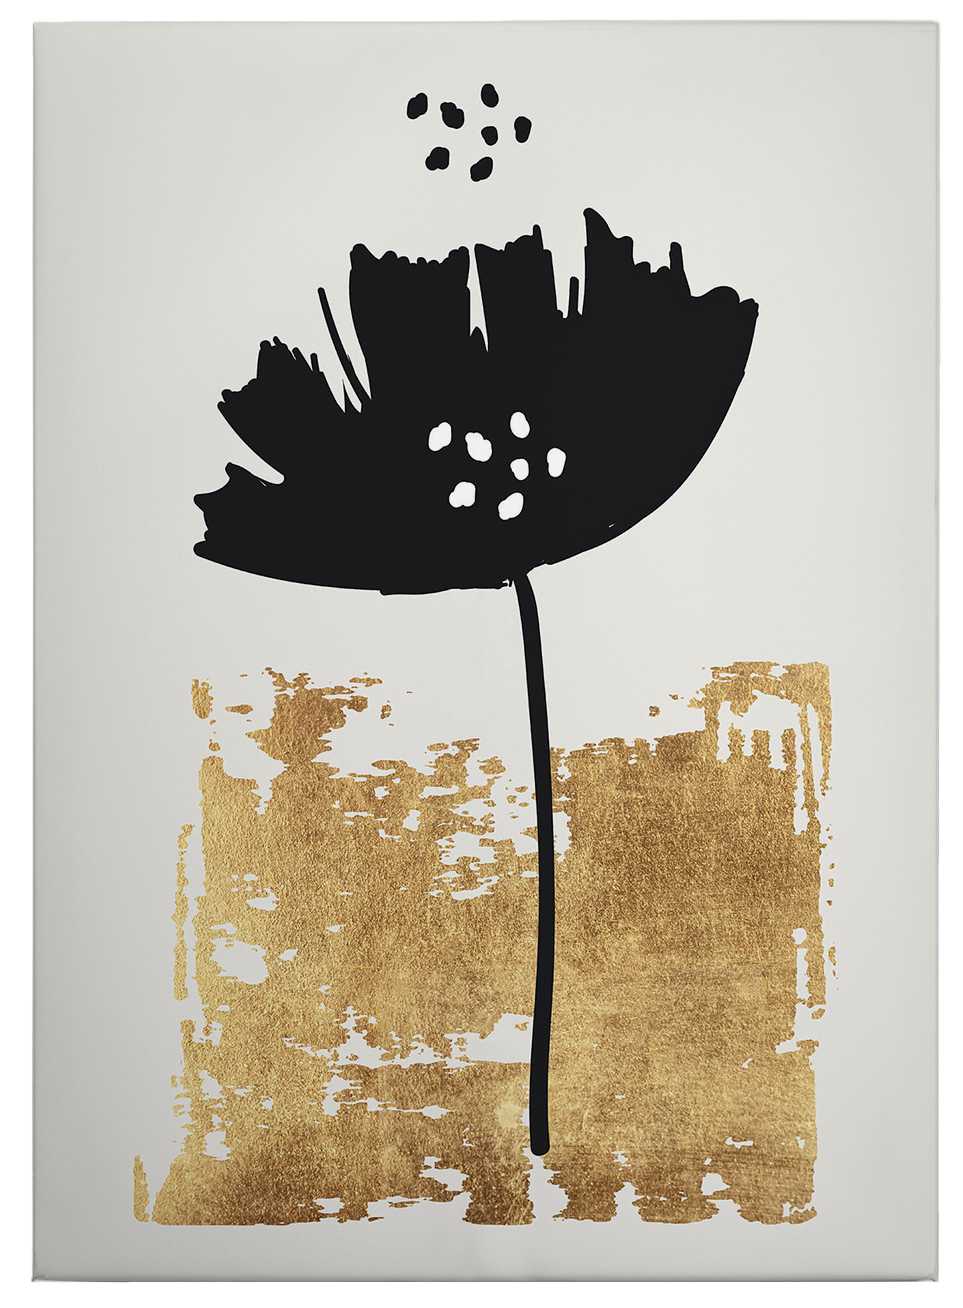             Cuadro en lienzo "Flor negra" Cubistika - 0,50 m x 0,70 m
        